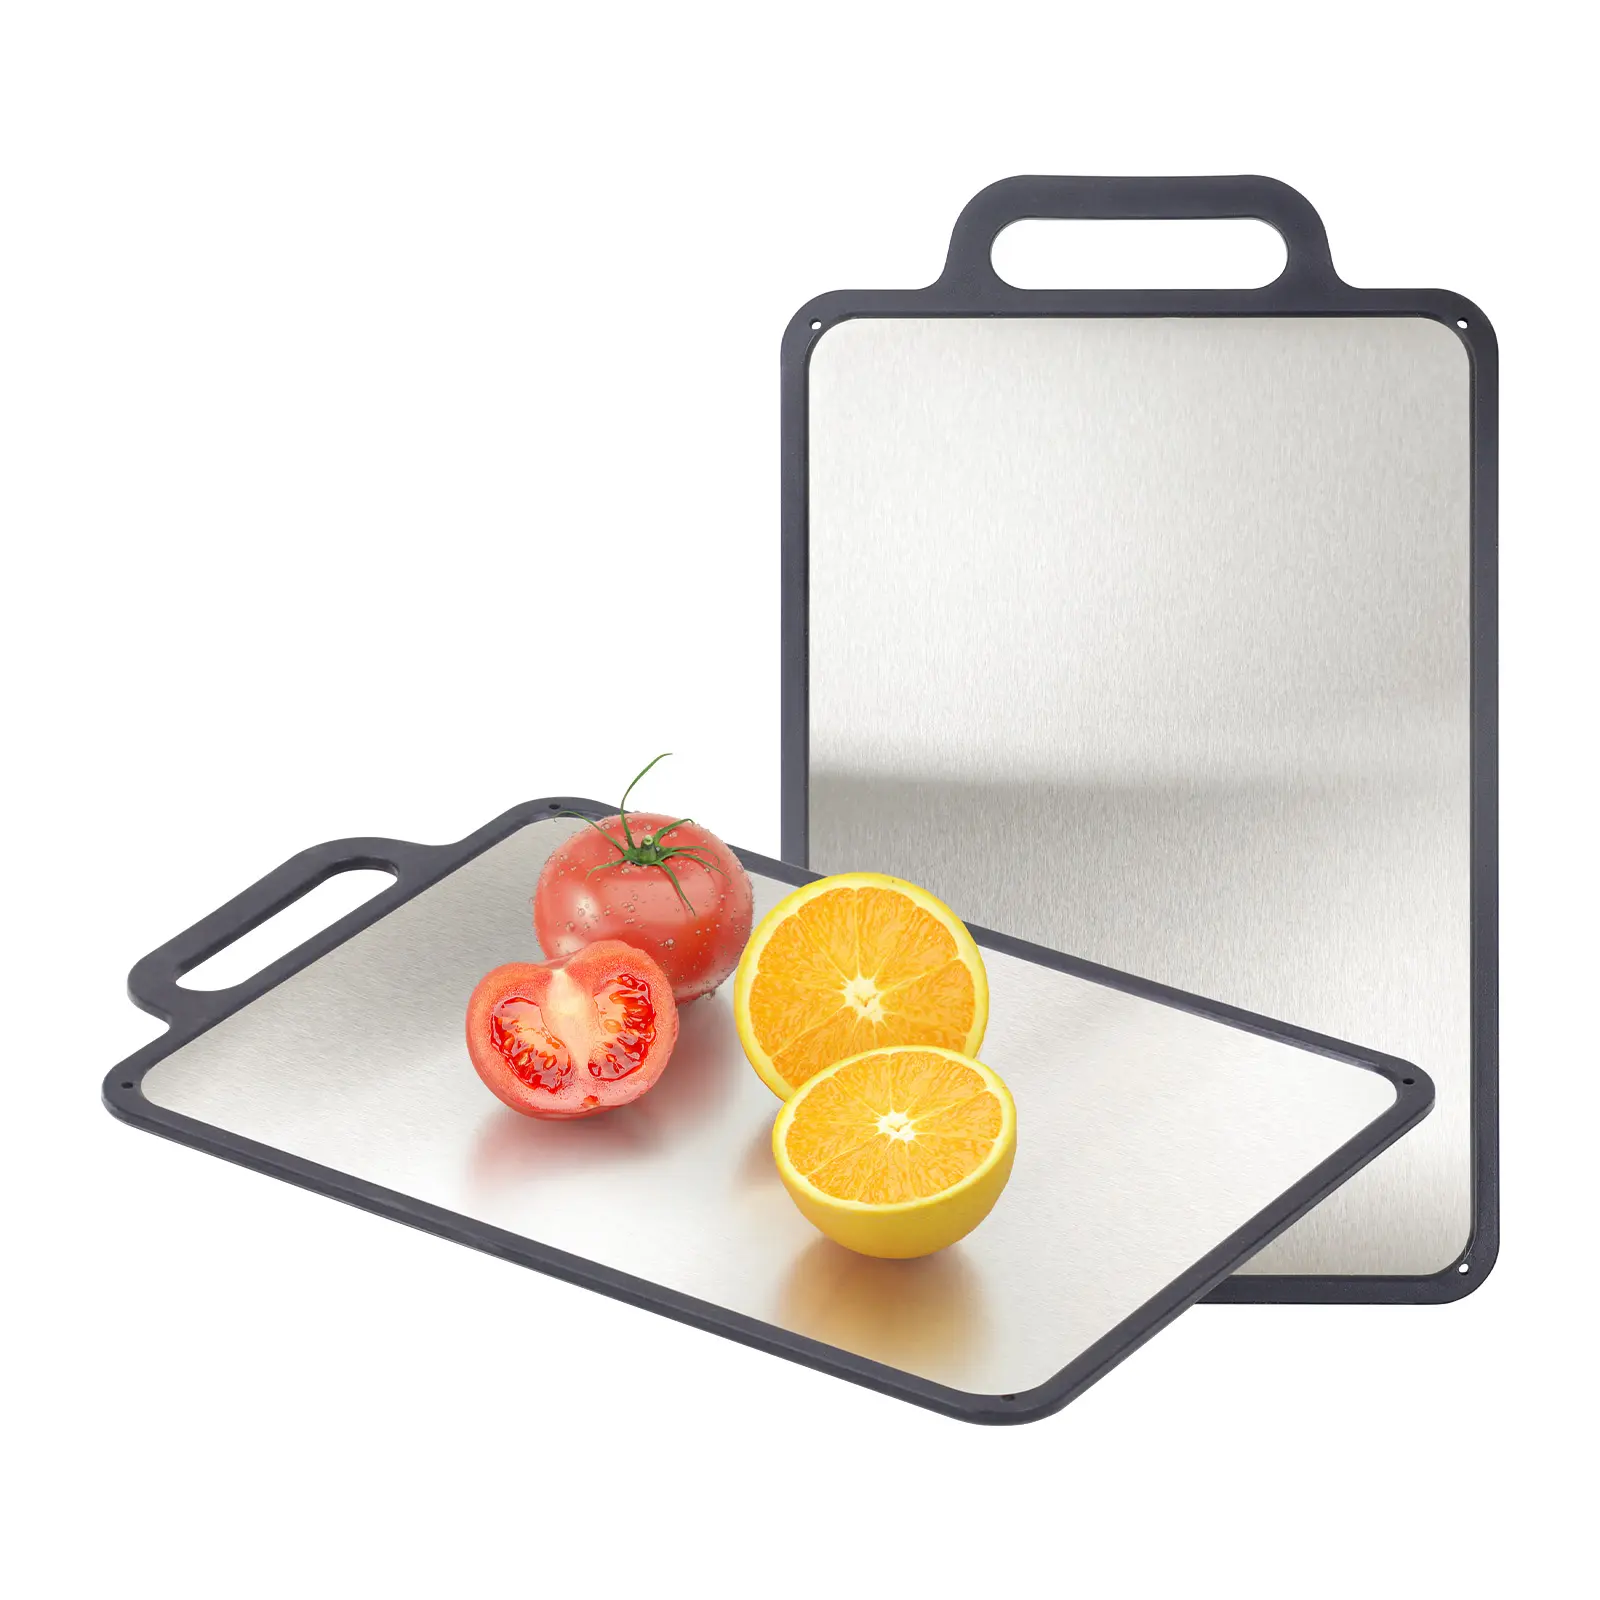 両面まな板、キッチン用まな板、キッチン調理用の304ステンレス鋼メンタルお手入れが簡単